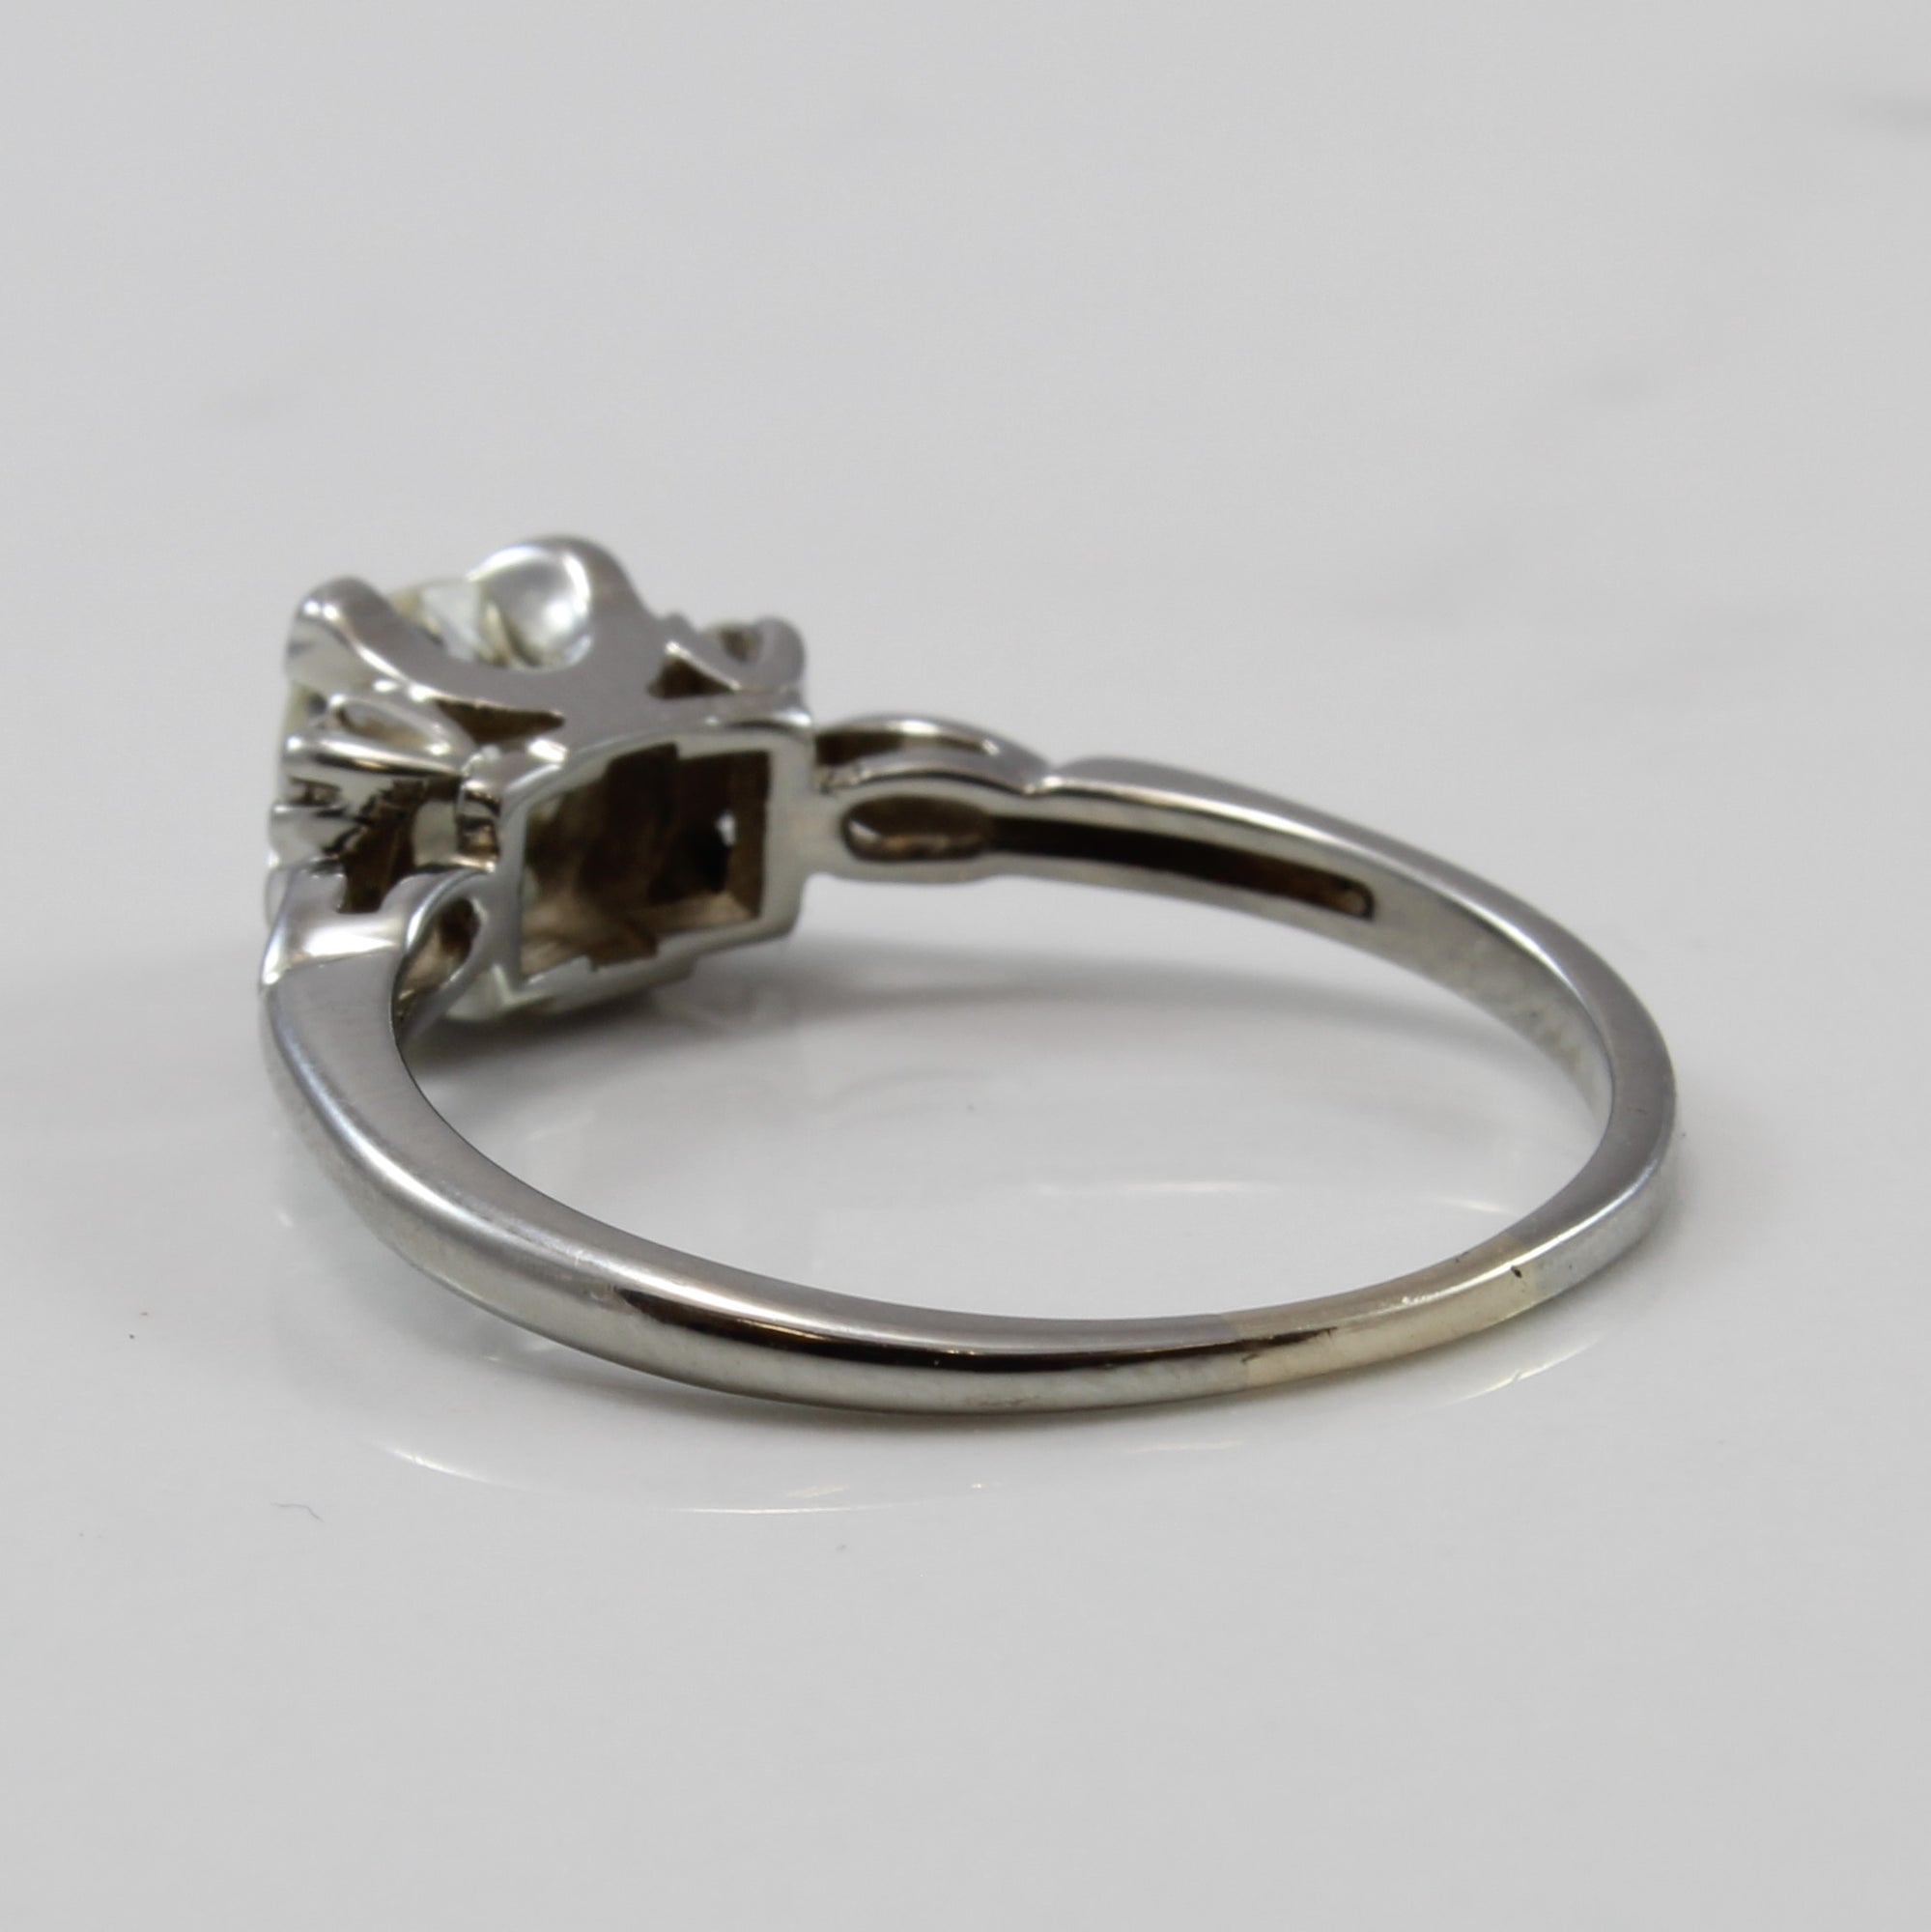 Elegant Retro Era Solitaire Diamond Ring | 0.75 ctw | SZ 8 |